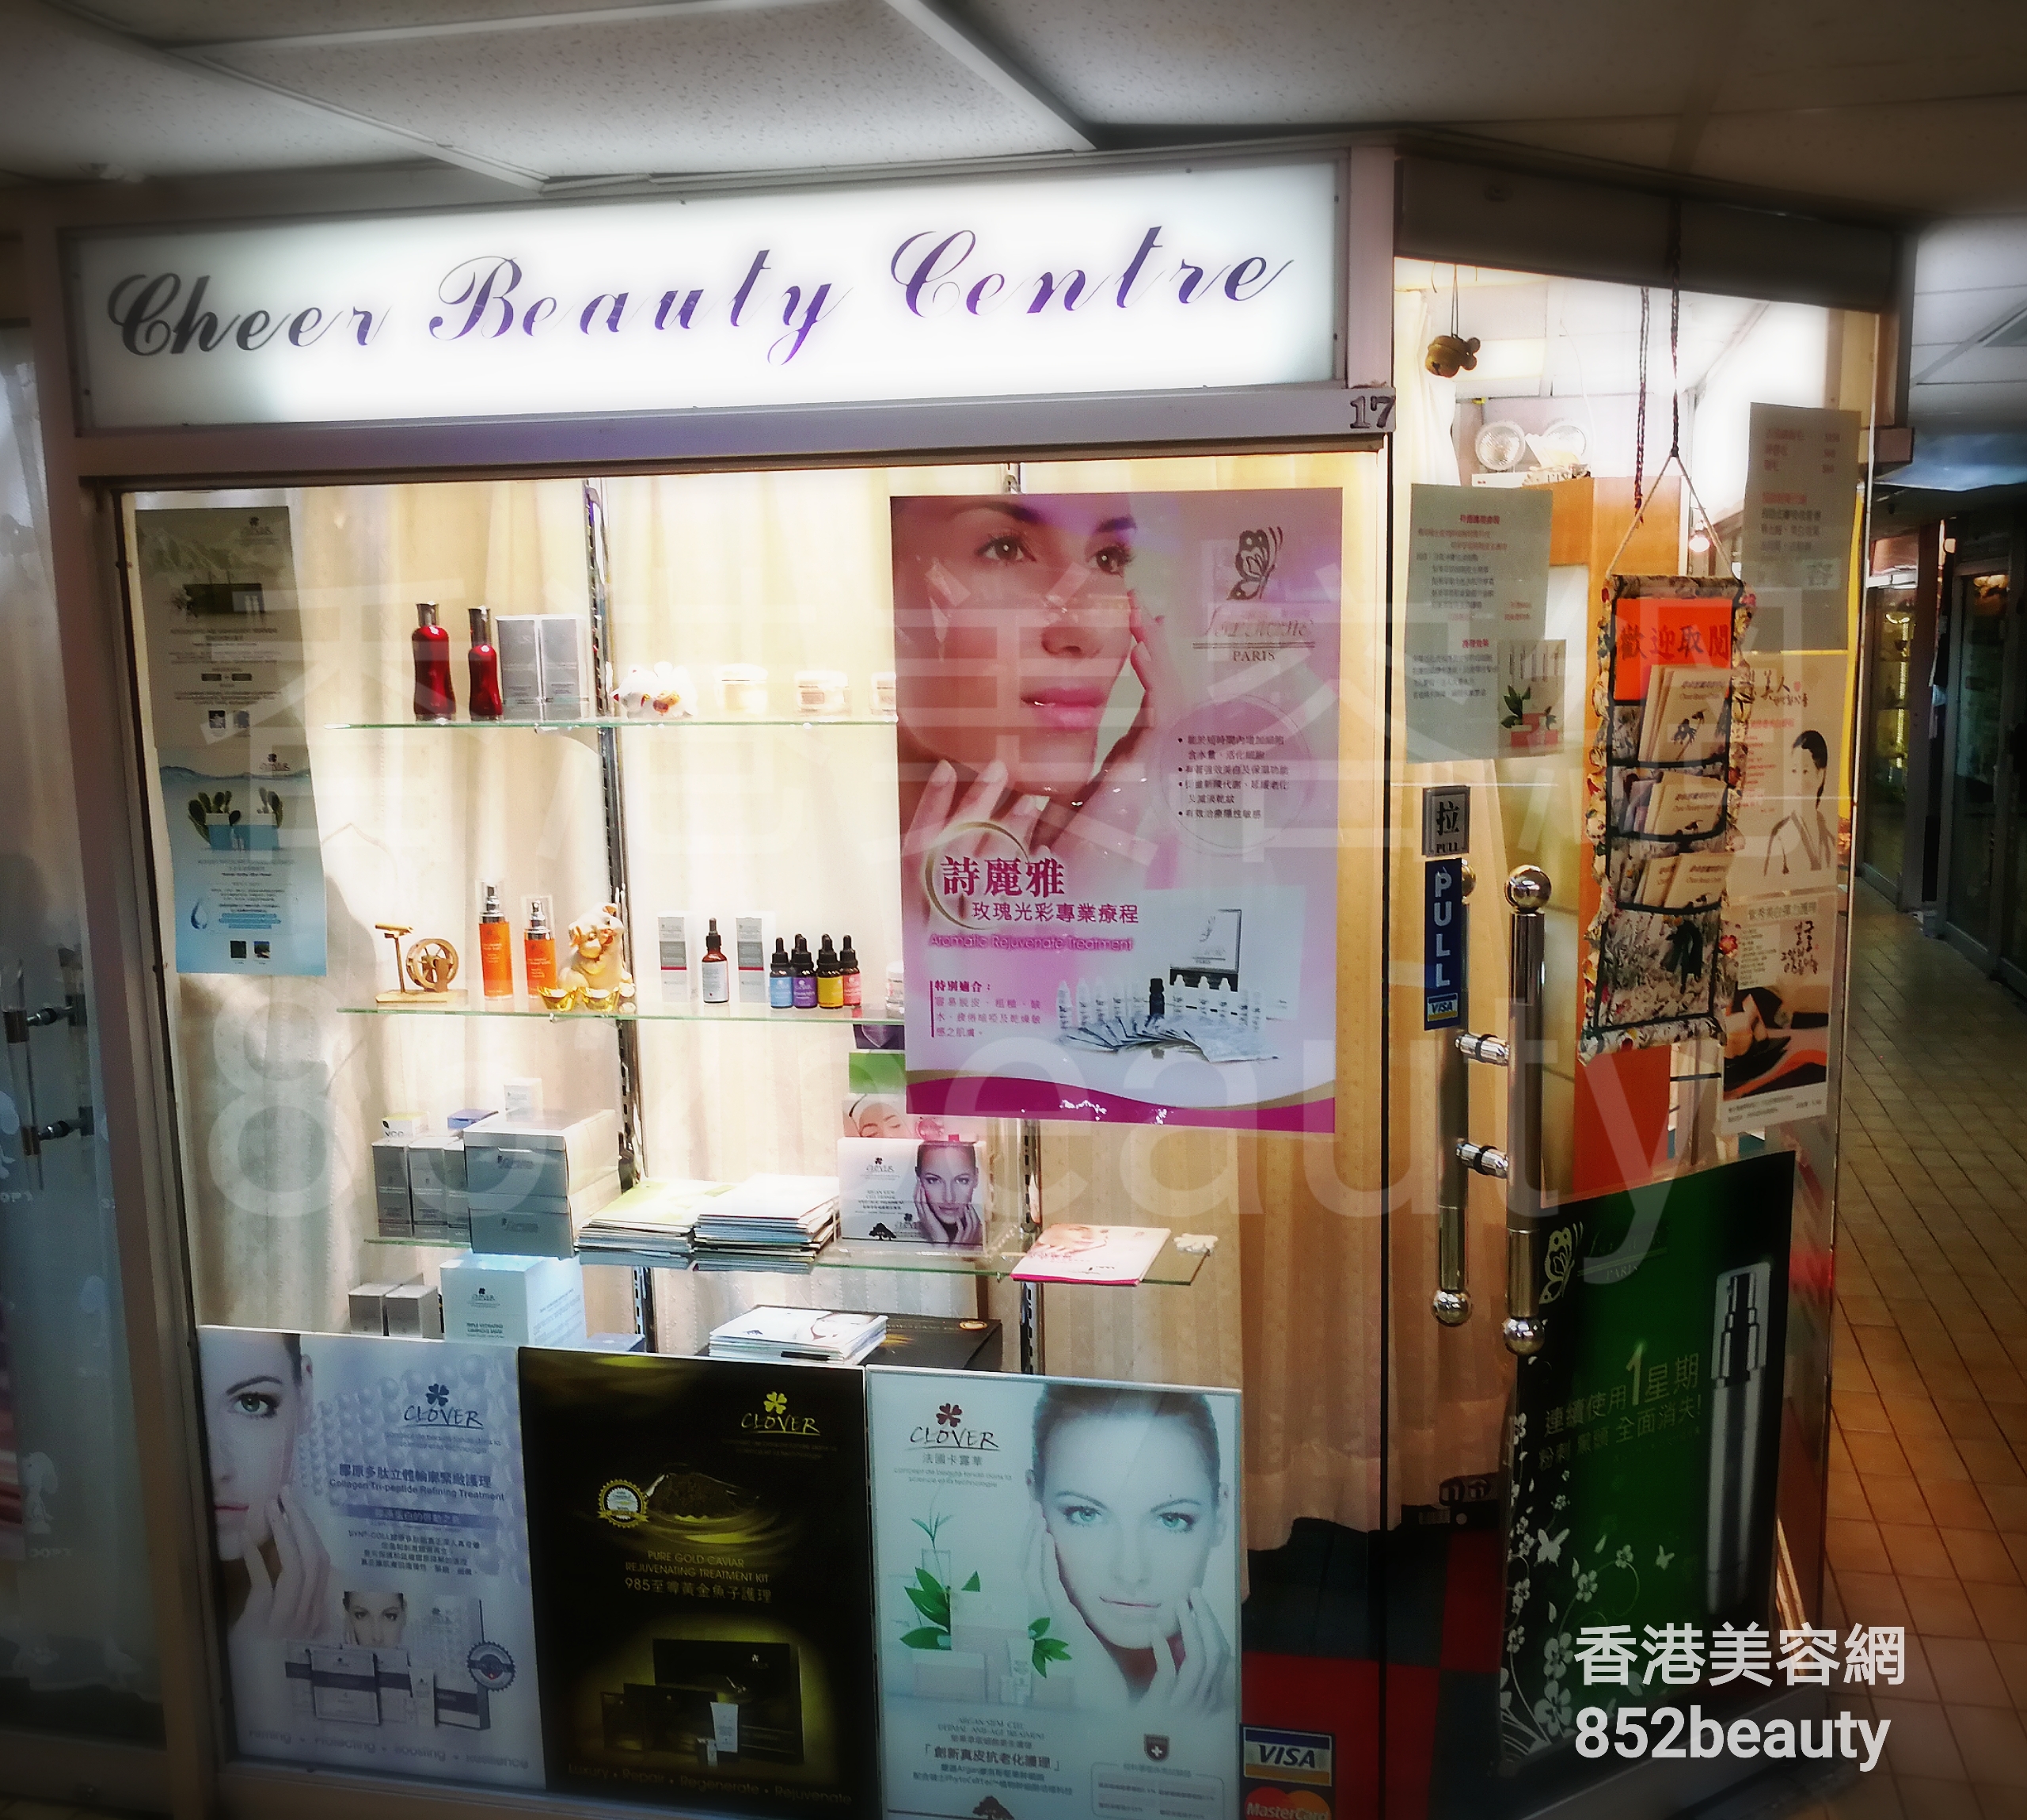 Facial Care: Cheer Beauty Centre